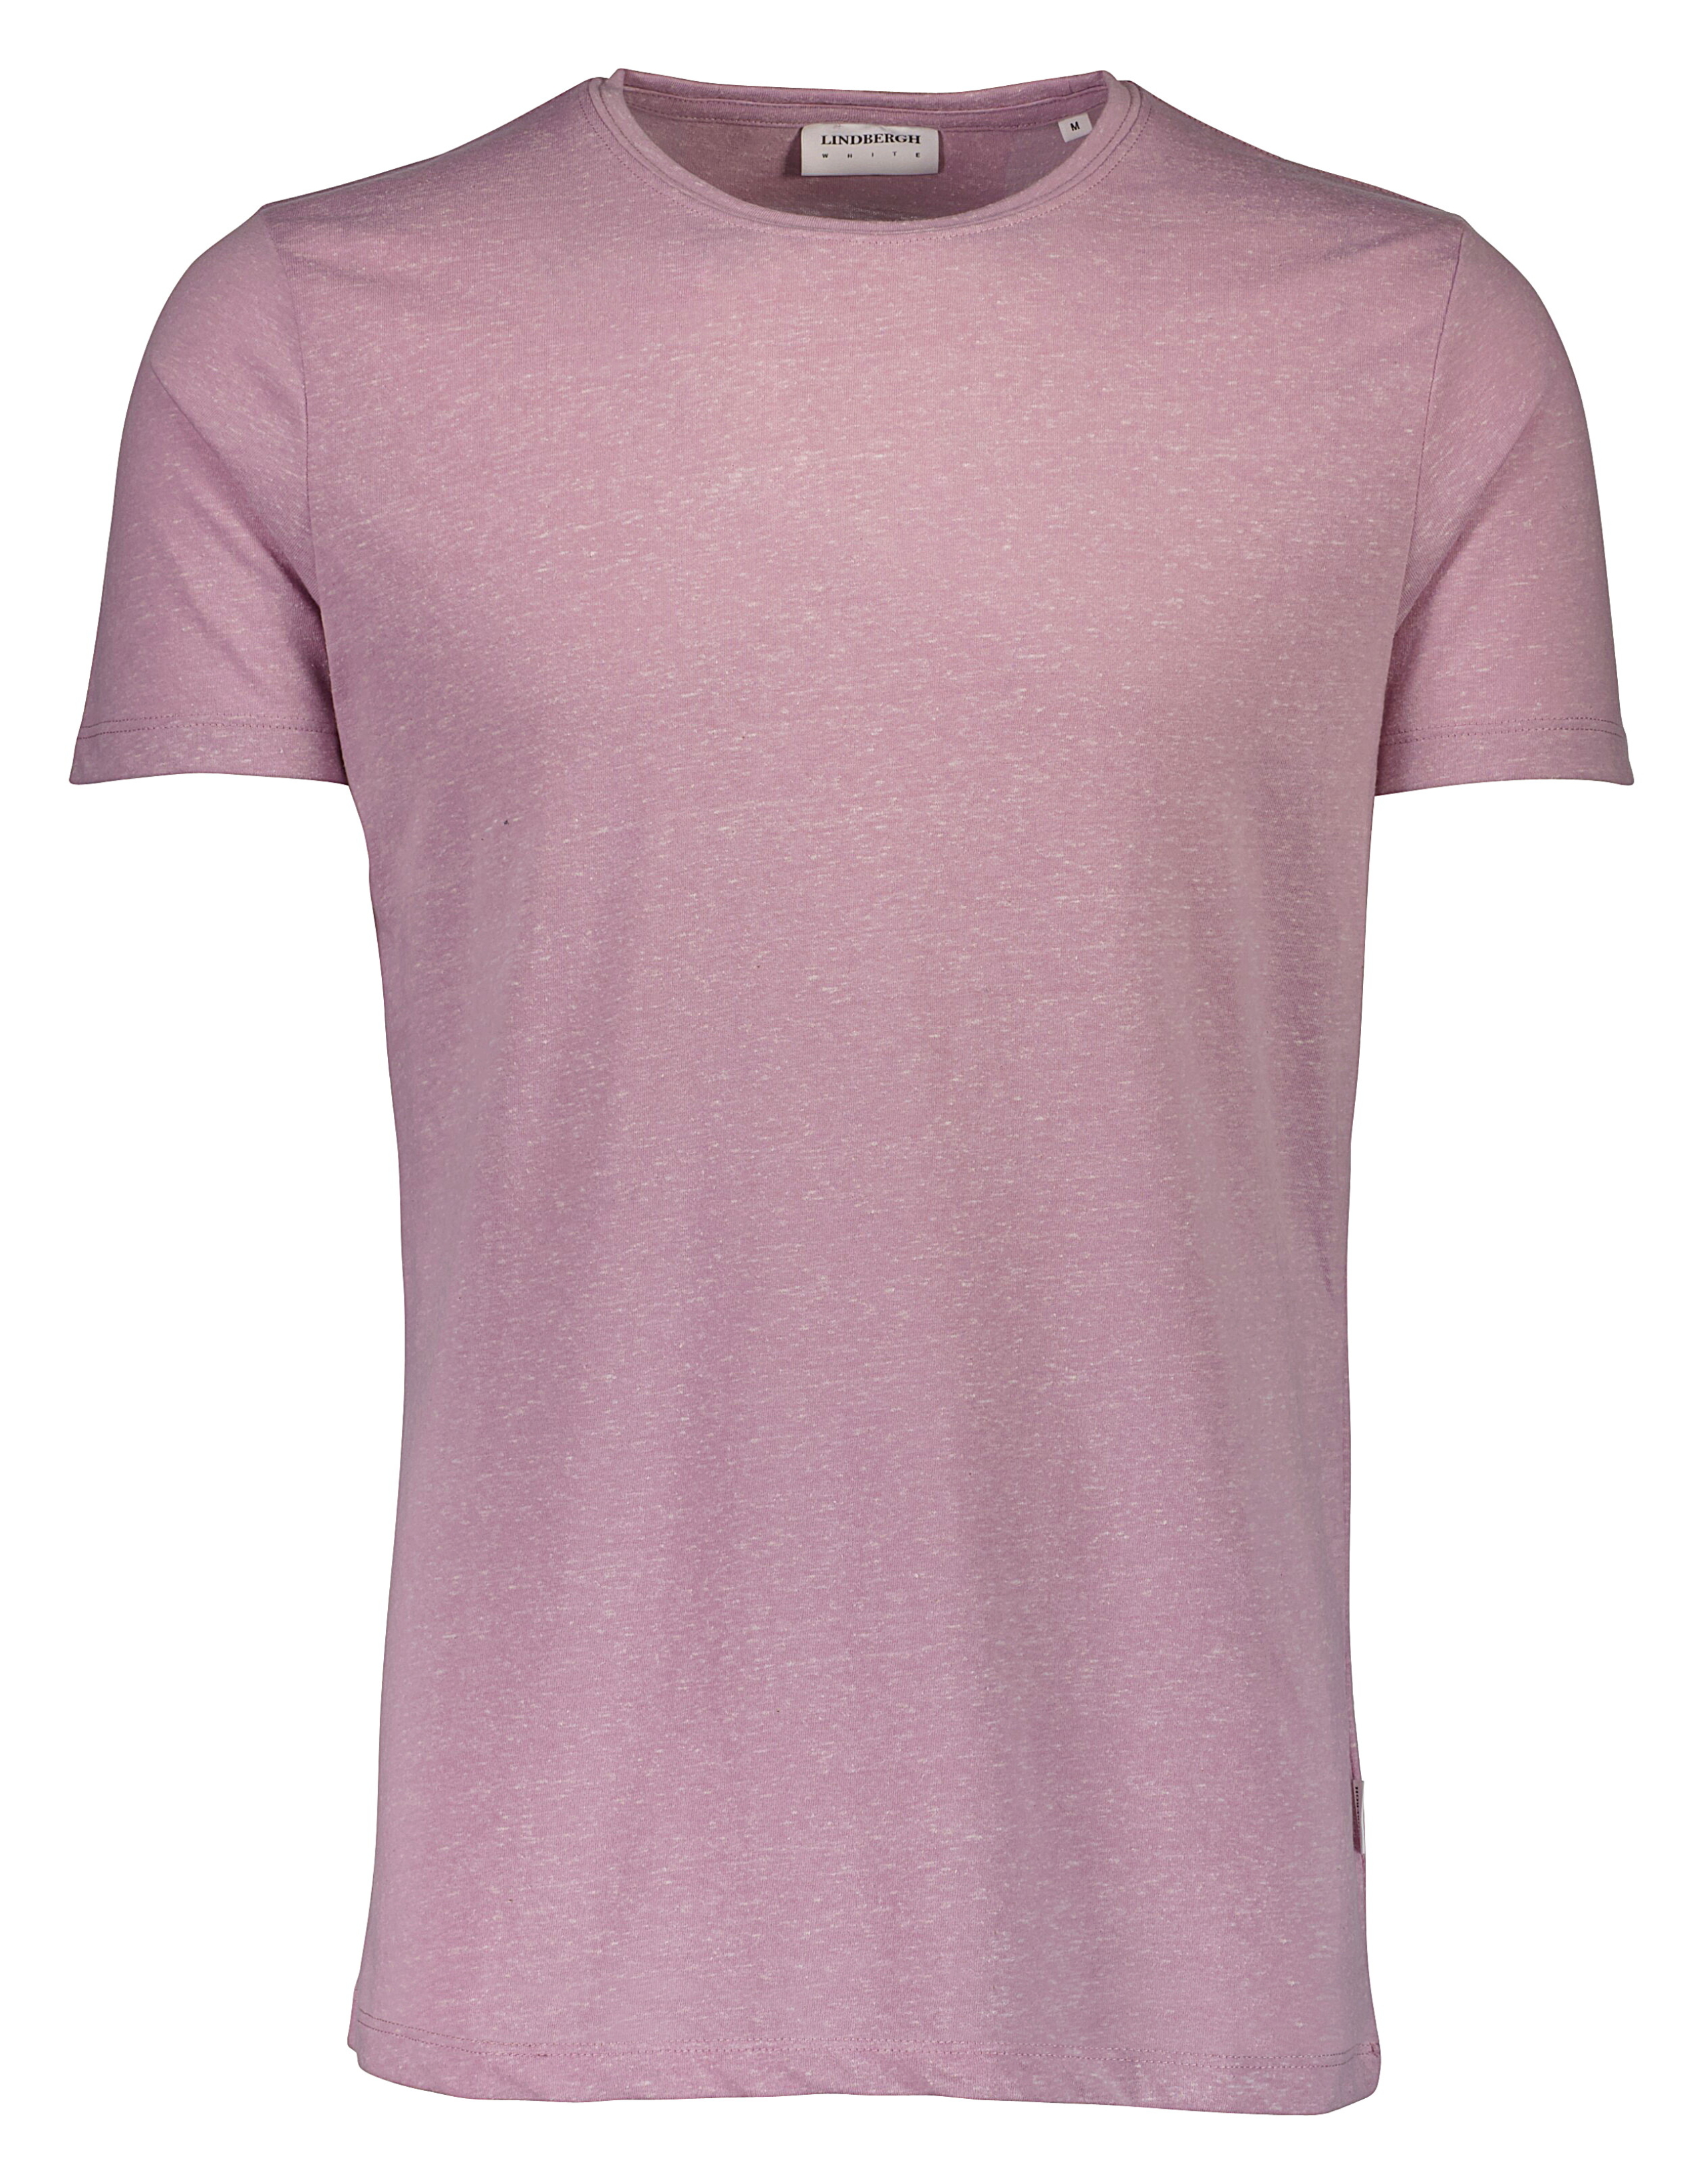 Lindbergh T-shirt lila / lt purple